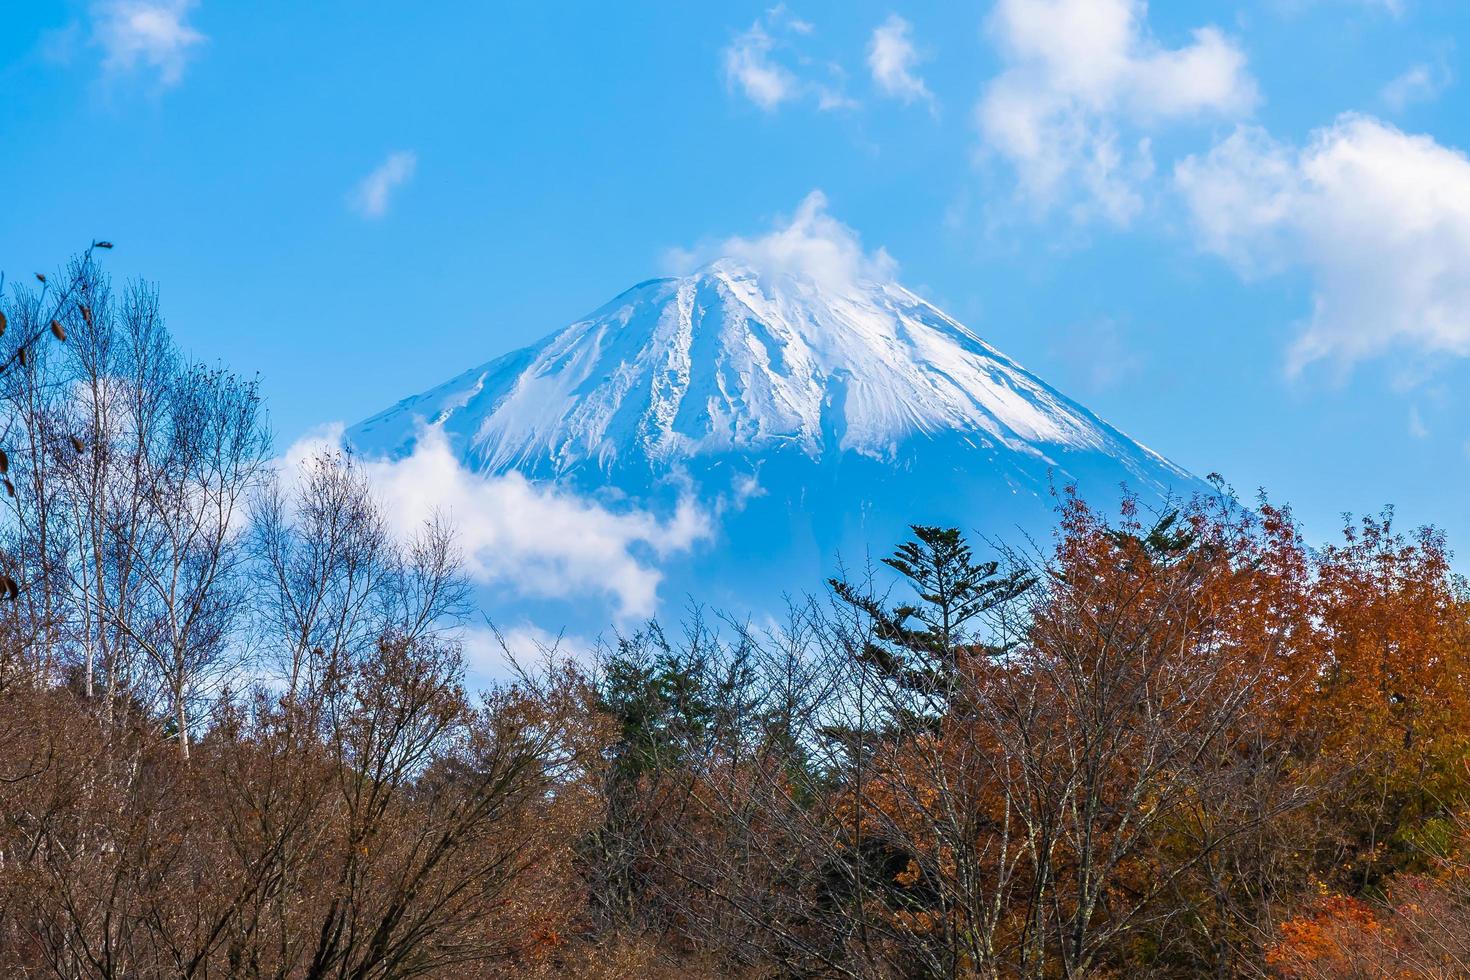 mt. Fuji au Japon en automne photo